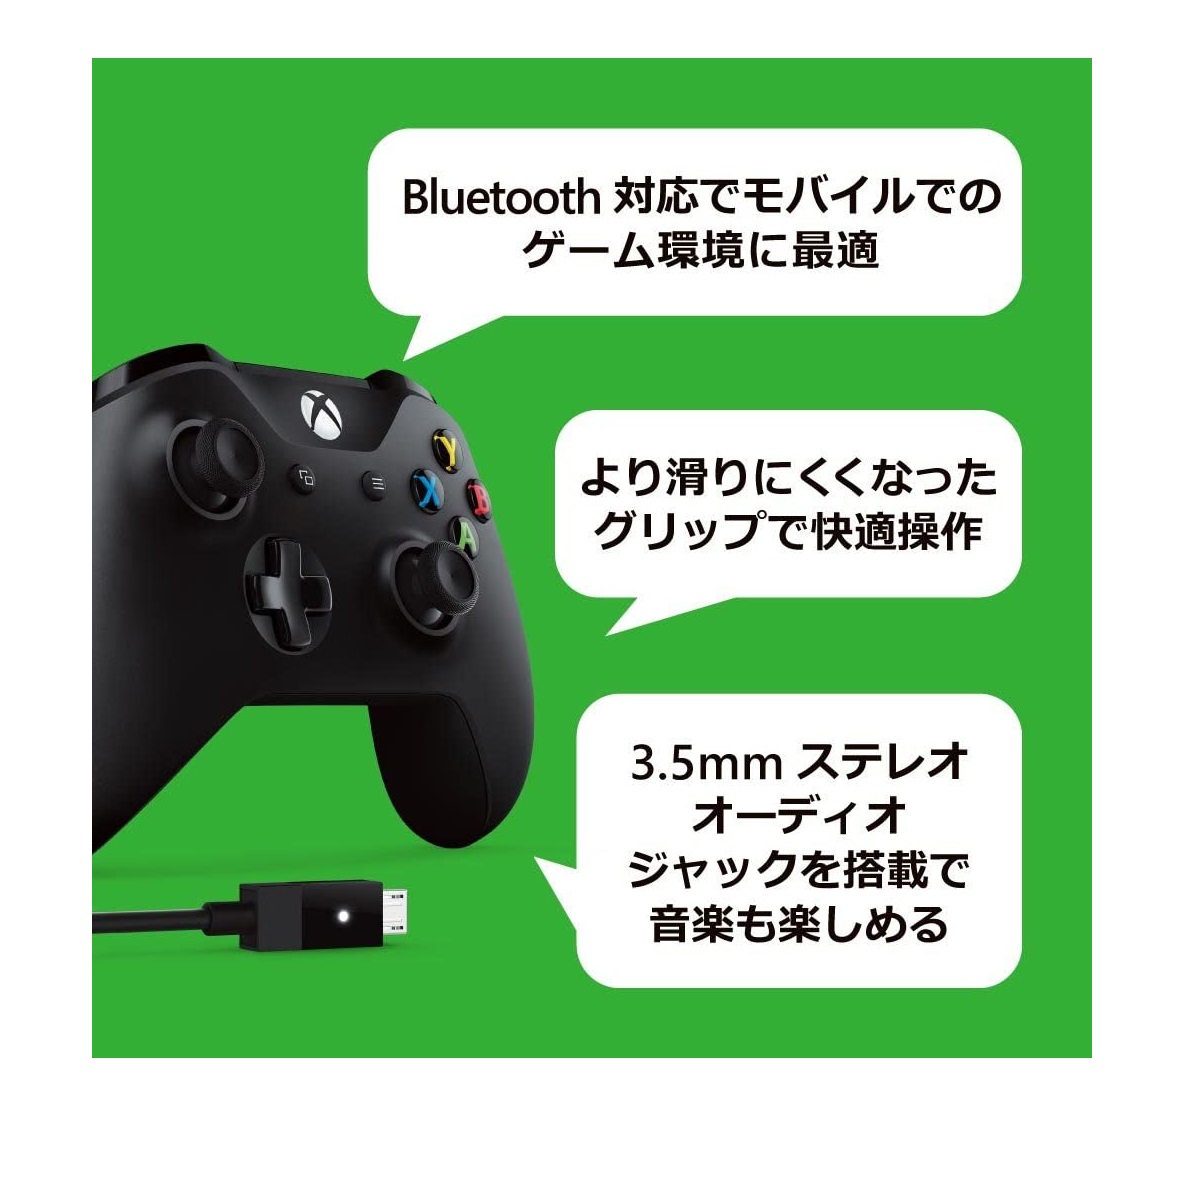 楽天市場 マイクロソフト ゲームコントローラー Bluetooth 有線接続 Xbox One Windows対応 Pc用usbケーブル同梱 4n6 Fabio